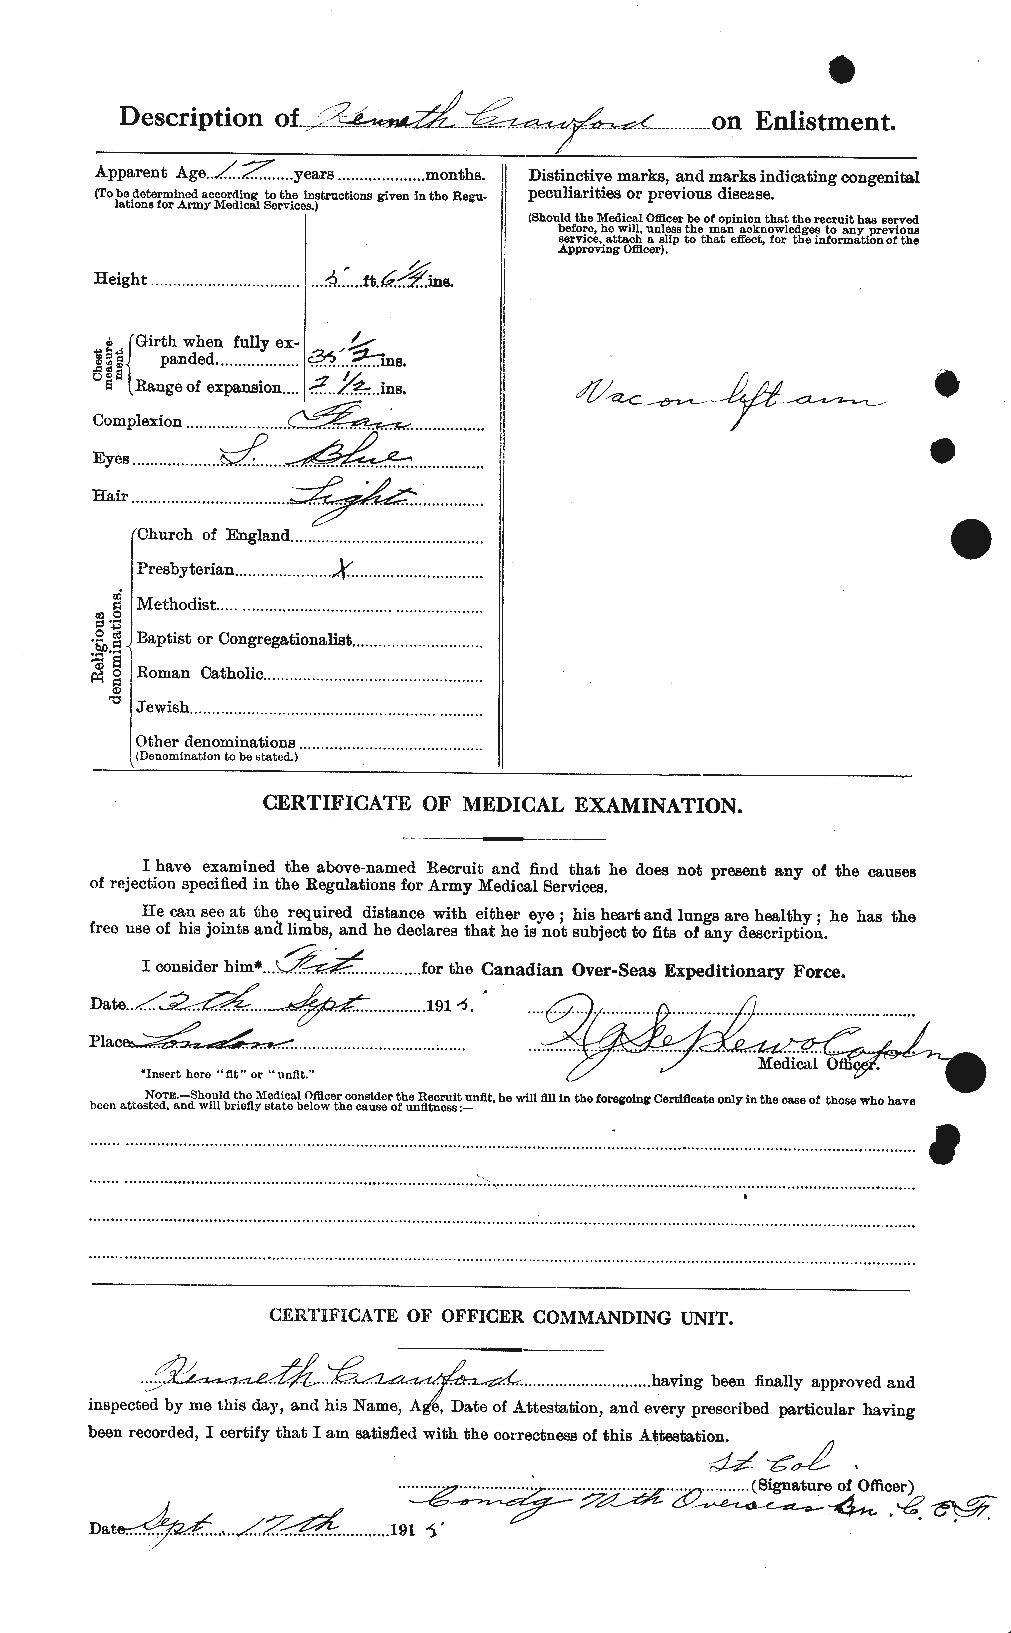 Dossiers du Personnel de la Première Guerre mondiale - CEC 061807b